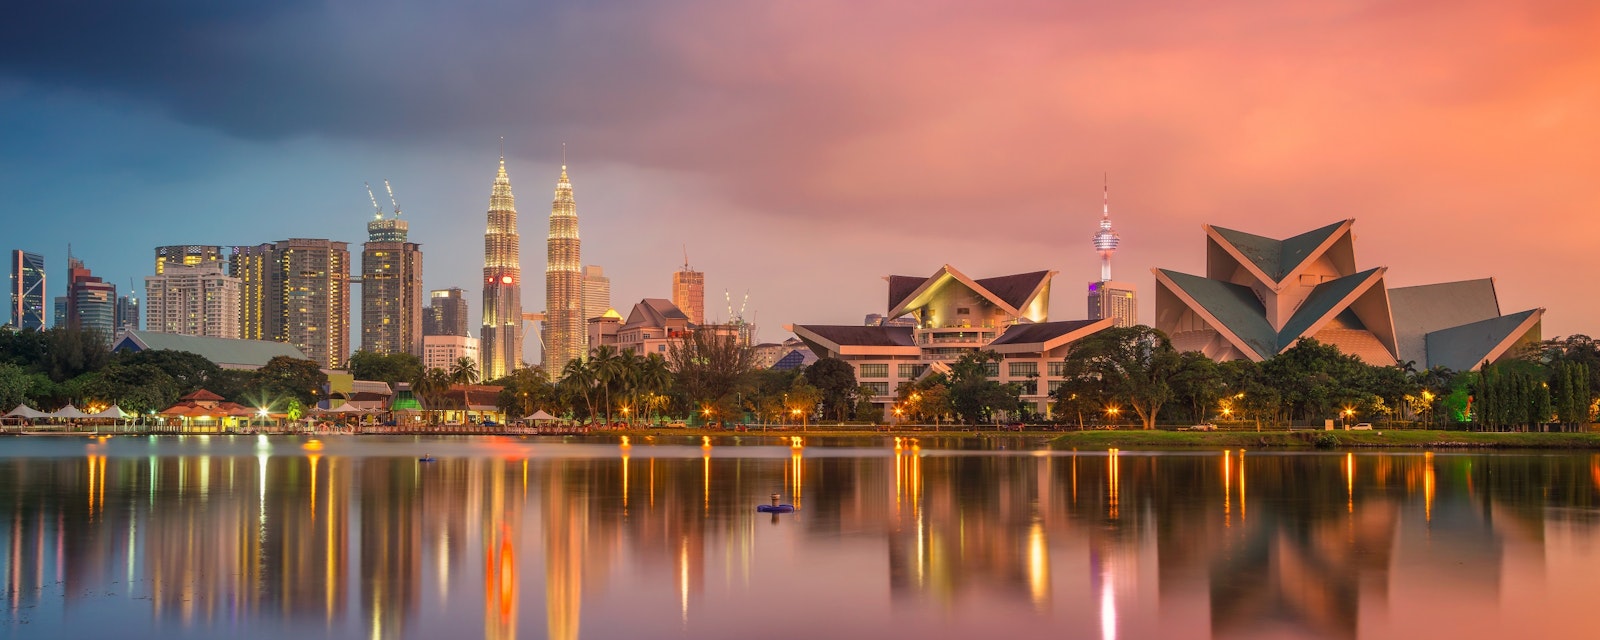 Kuala,Lumpur.,Cityscape,Image,Of,Kuala,Lumpur,,Malaysia,During,Sunset.